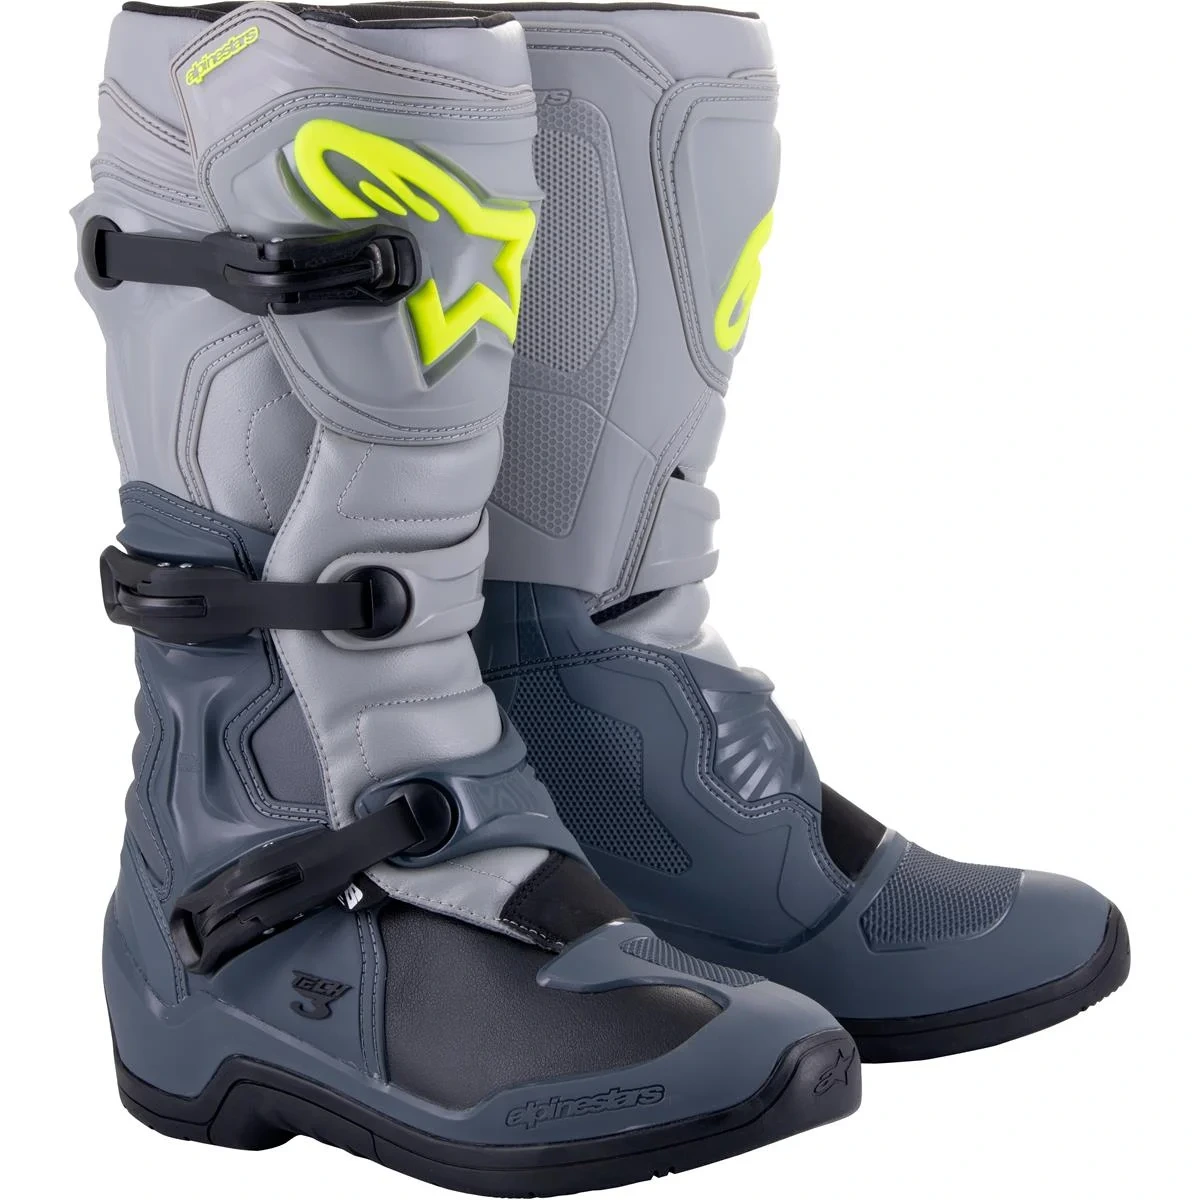 Image of Alpinestars Tech 3 Boots Dark Gray Light Gray Black Size US 6 EN